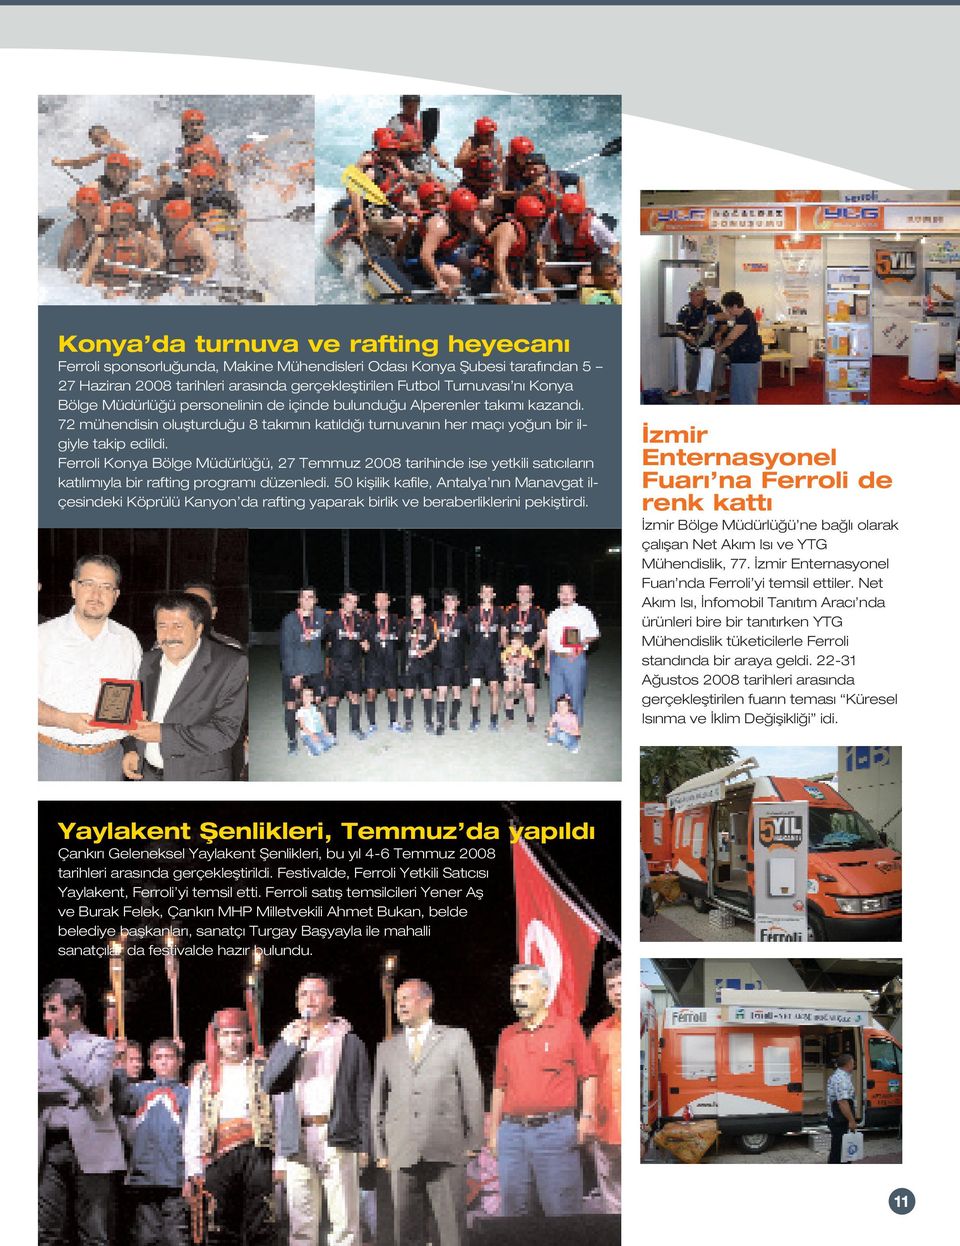 Ferroli Konya Bölge Müdürlü ü, 27 Temmuz 2008 tarihinde ise yetkili sat c lar n kat l m yla bir rafting program düzenledi.